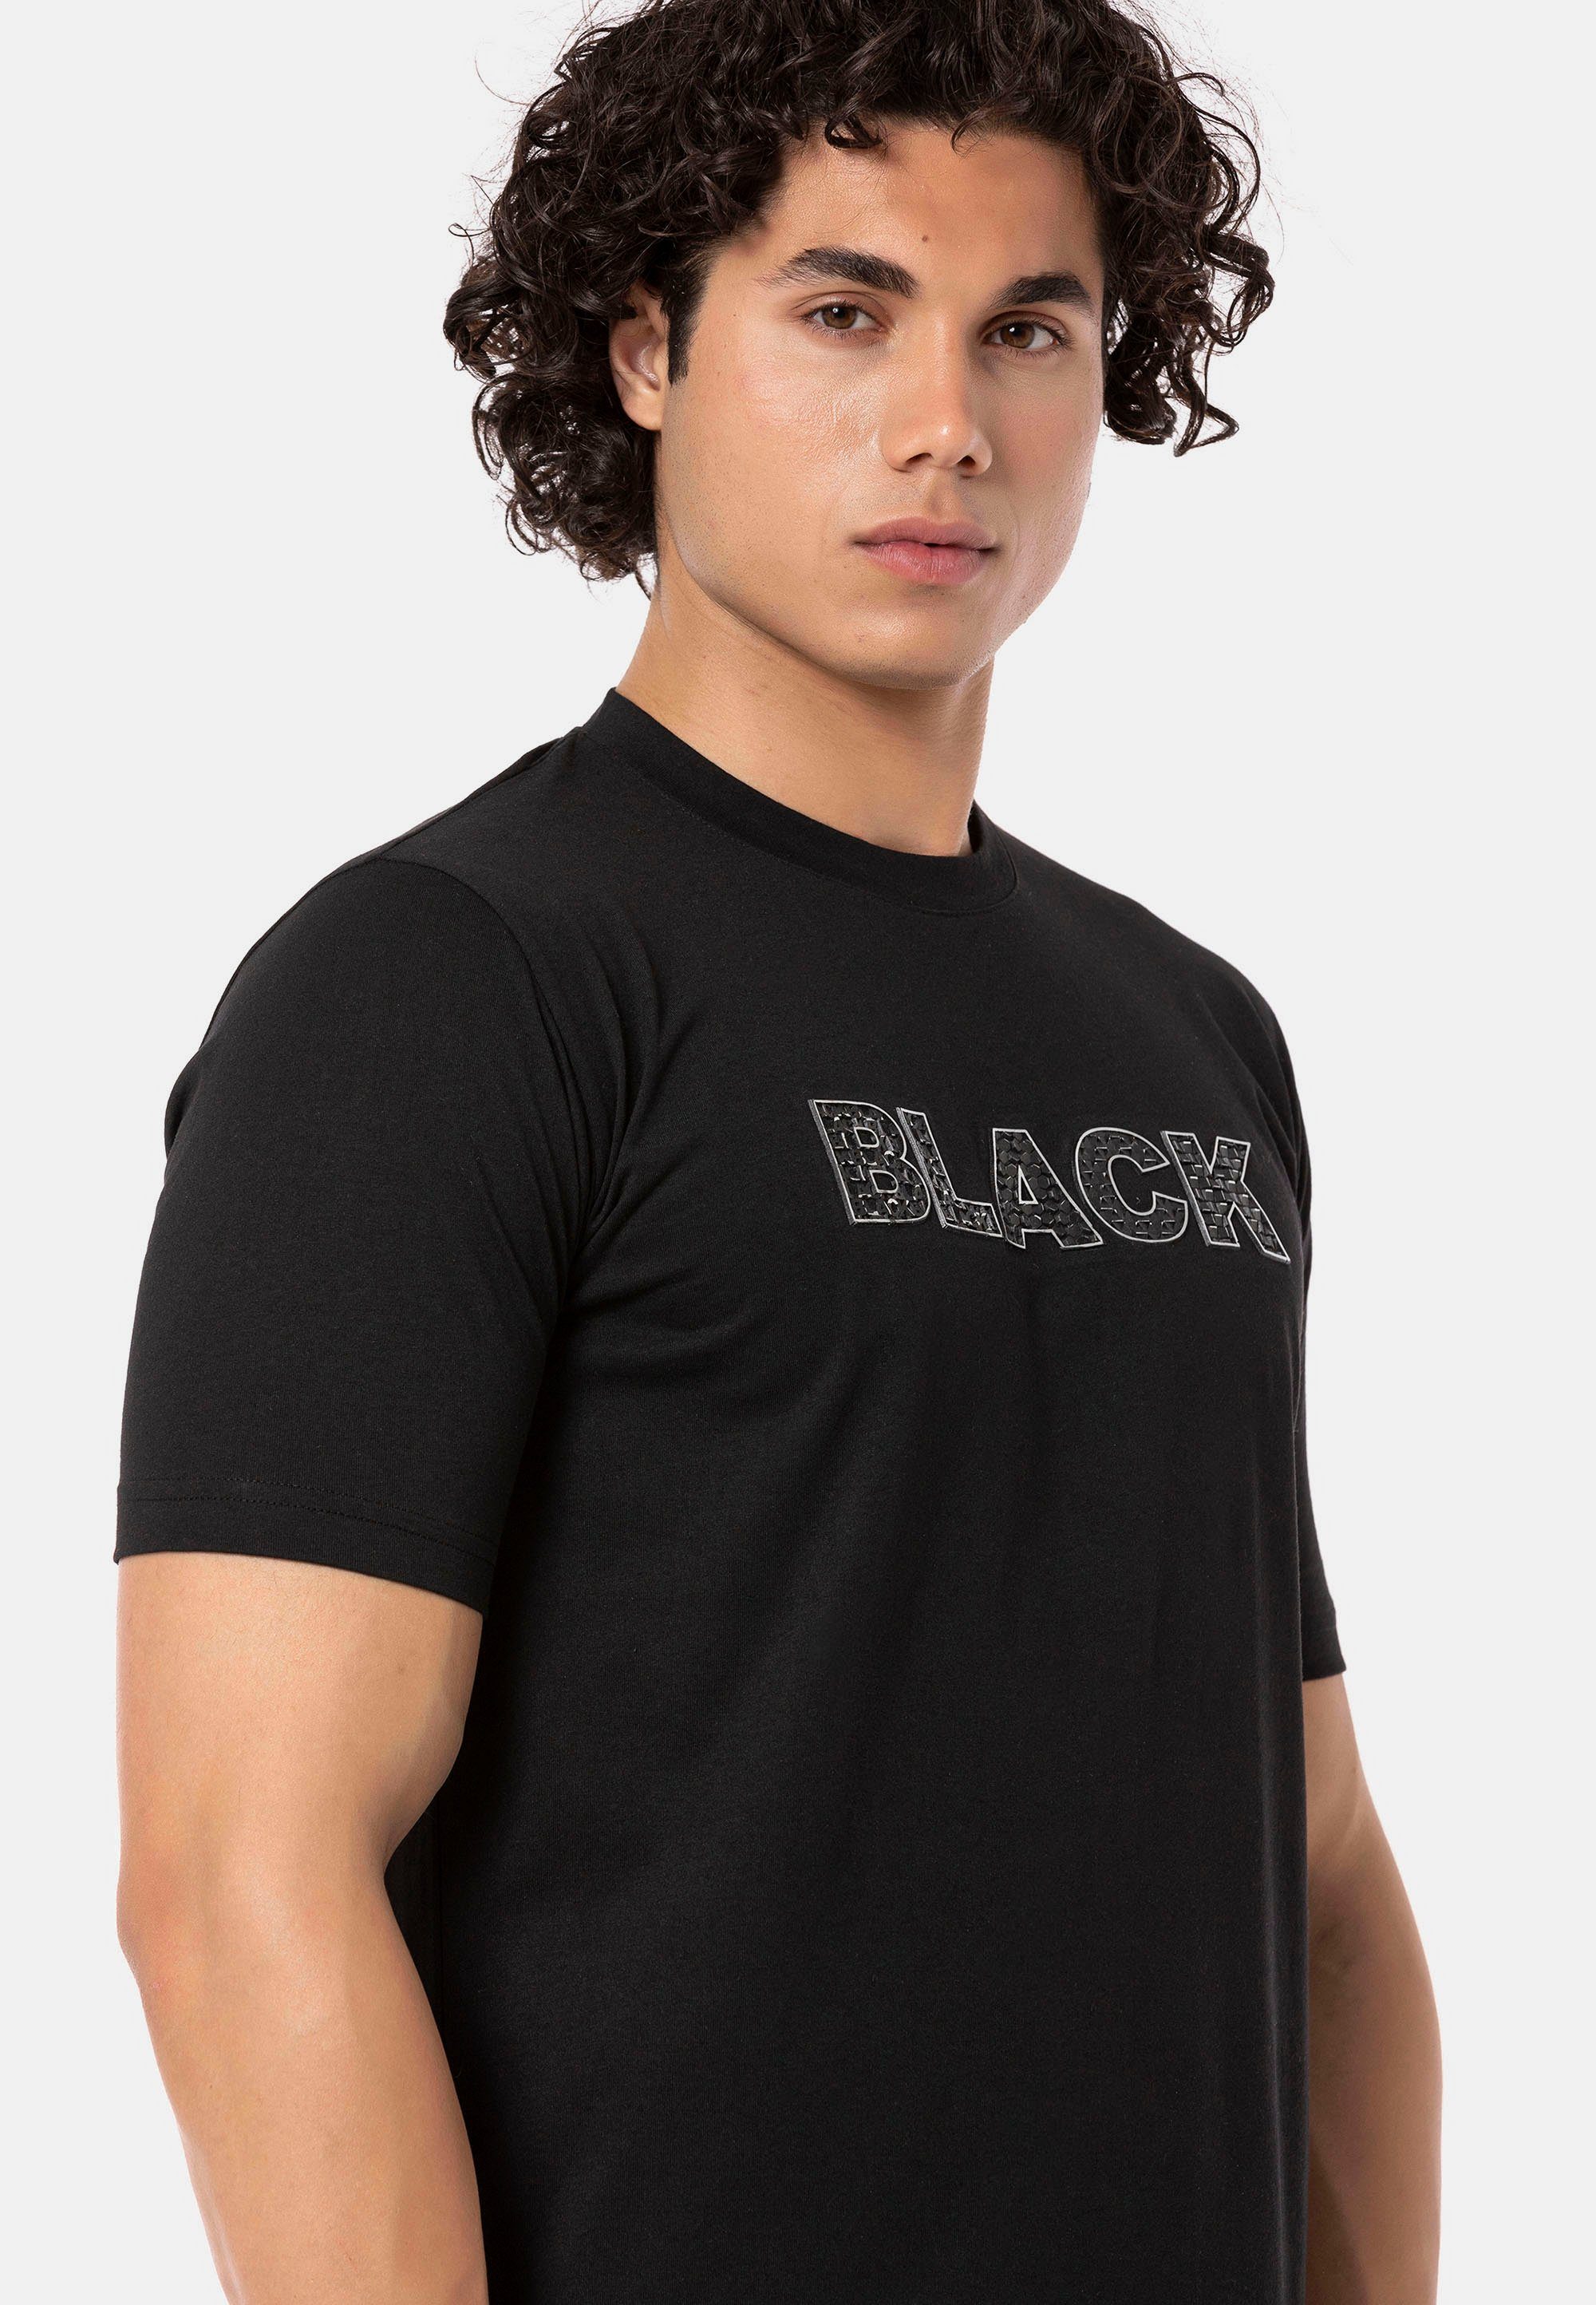 Print hochwertigen Gern mit RedBridge T-Shirt schwarz